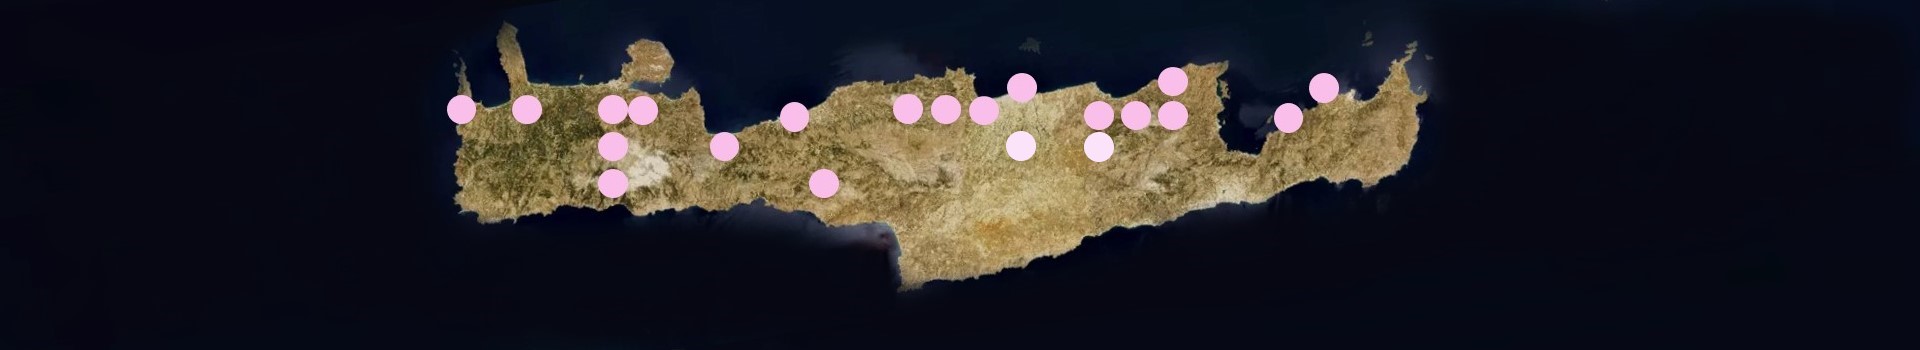 *based on http://www.pamperis.gr/THE_BUTTERFLIES_OF_GREECE/MAPS.html